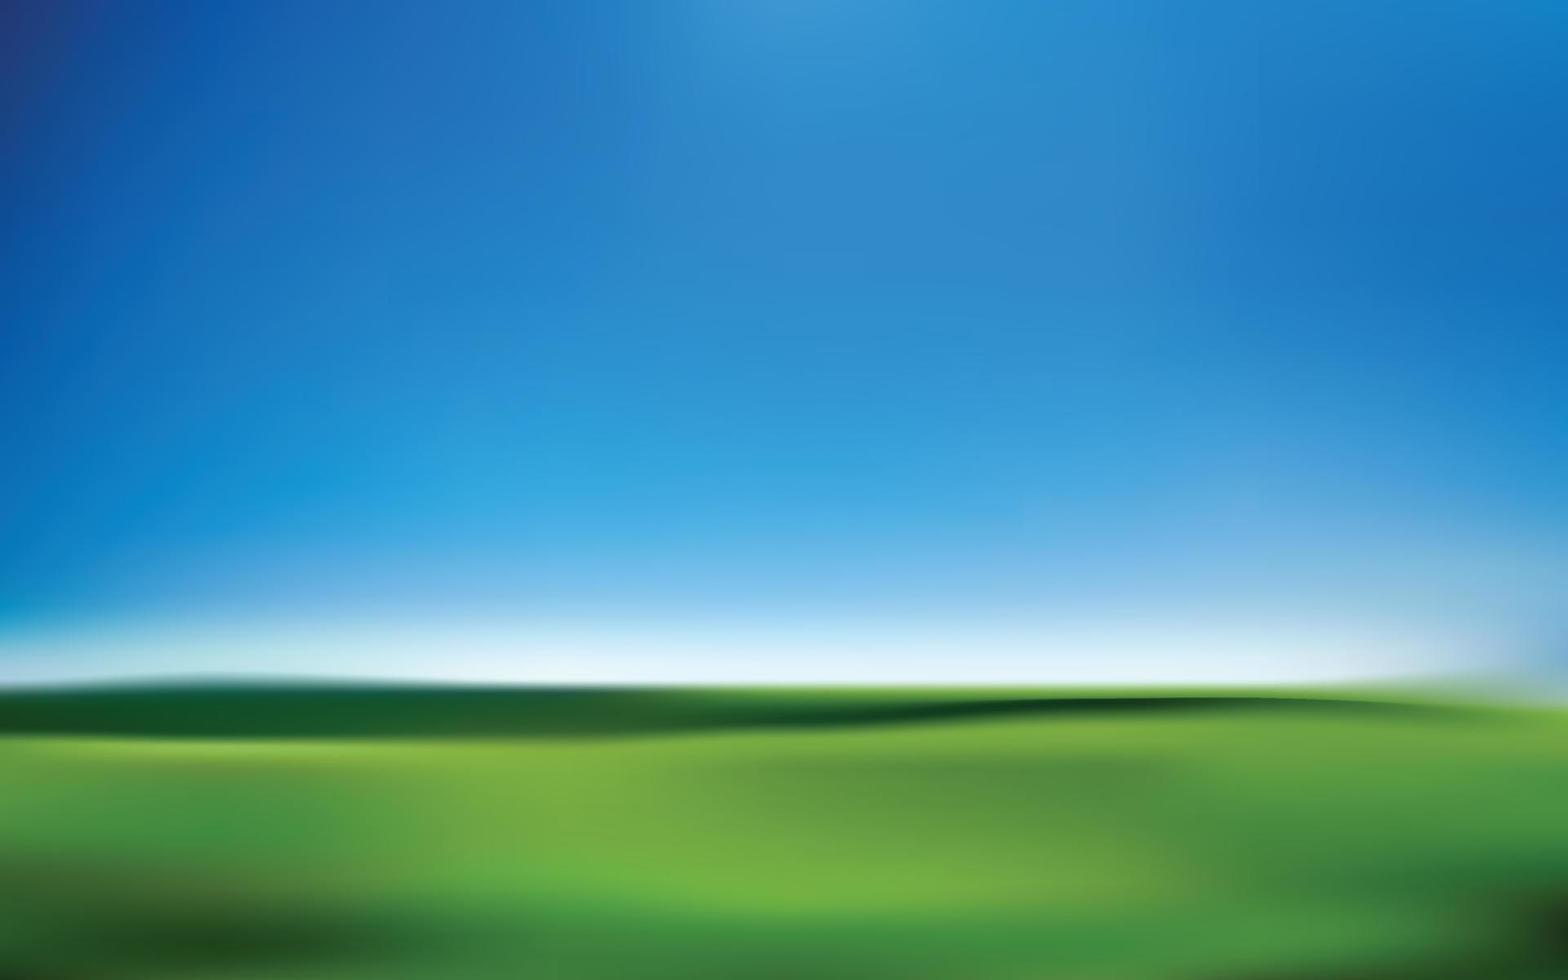 abstract achtergrond met groen gras en blauw lucht, vector illustratie.